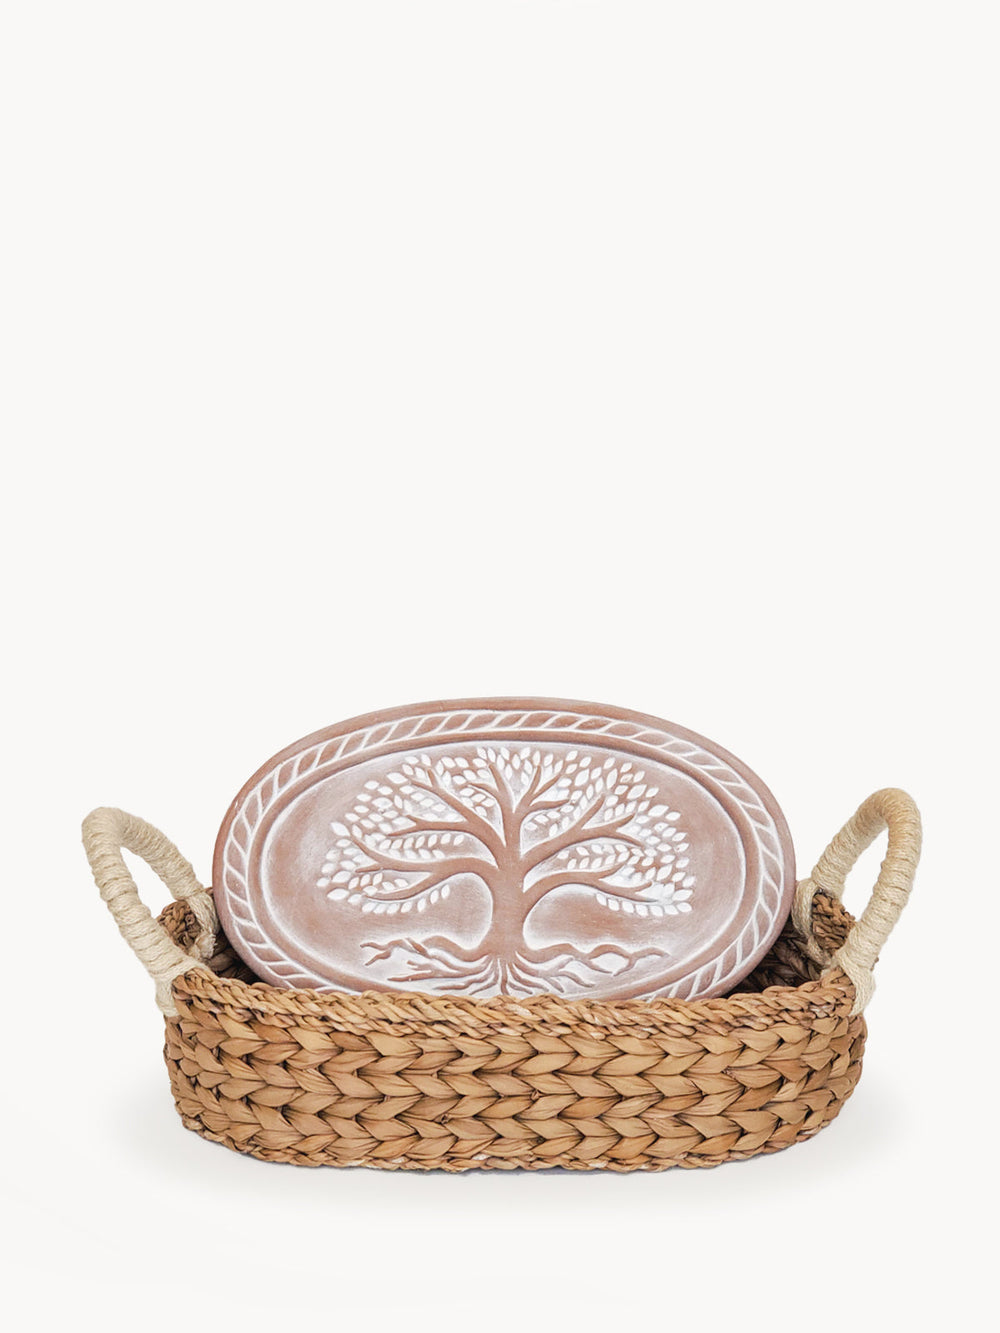 Bread Warmer & Basket - Tree of Life Oval-0